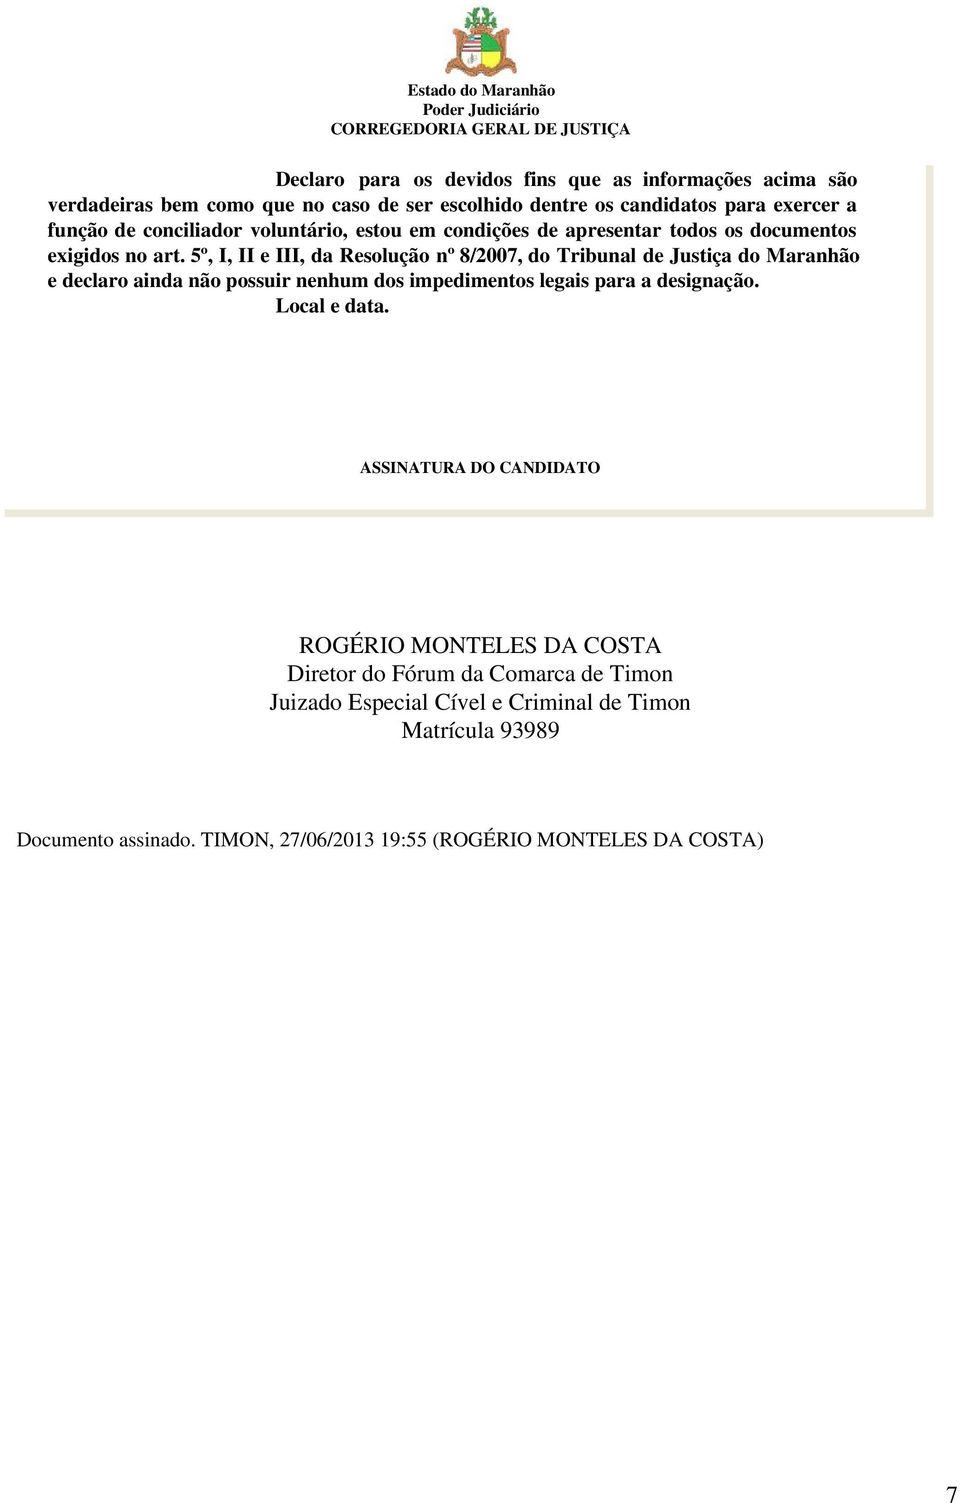 5º, I, II e III, da Resolução nº 8/2007, do Tribunal de Justiça do Maranhão e declaro ainda não possuir nenhum dos impedimentos legais para a designação.